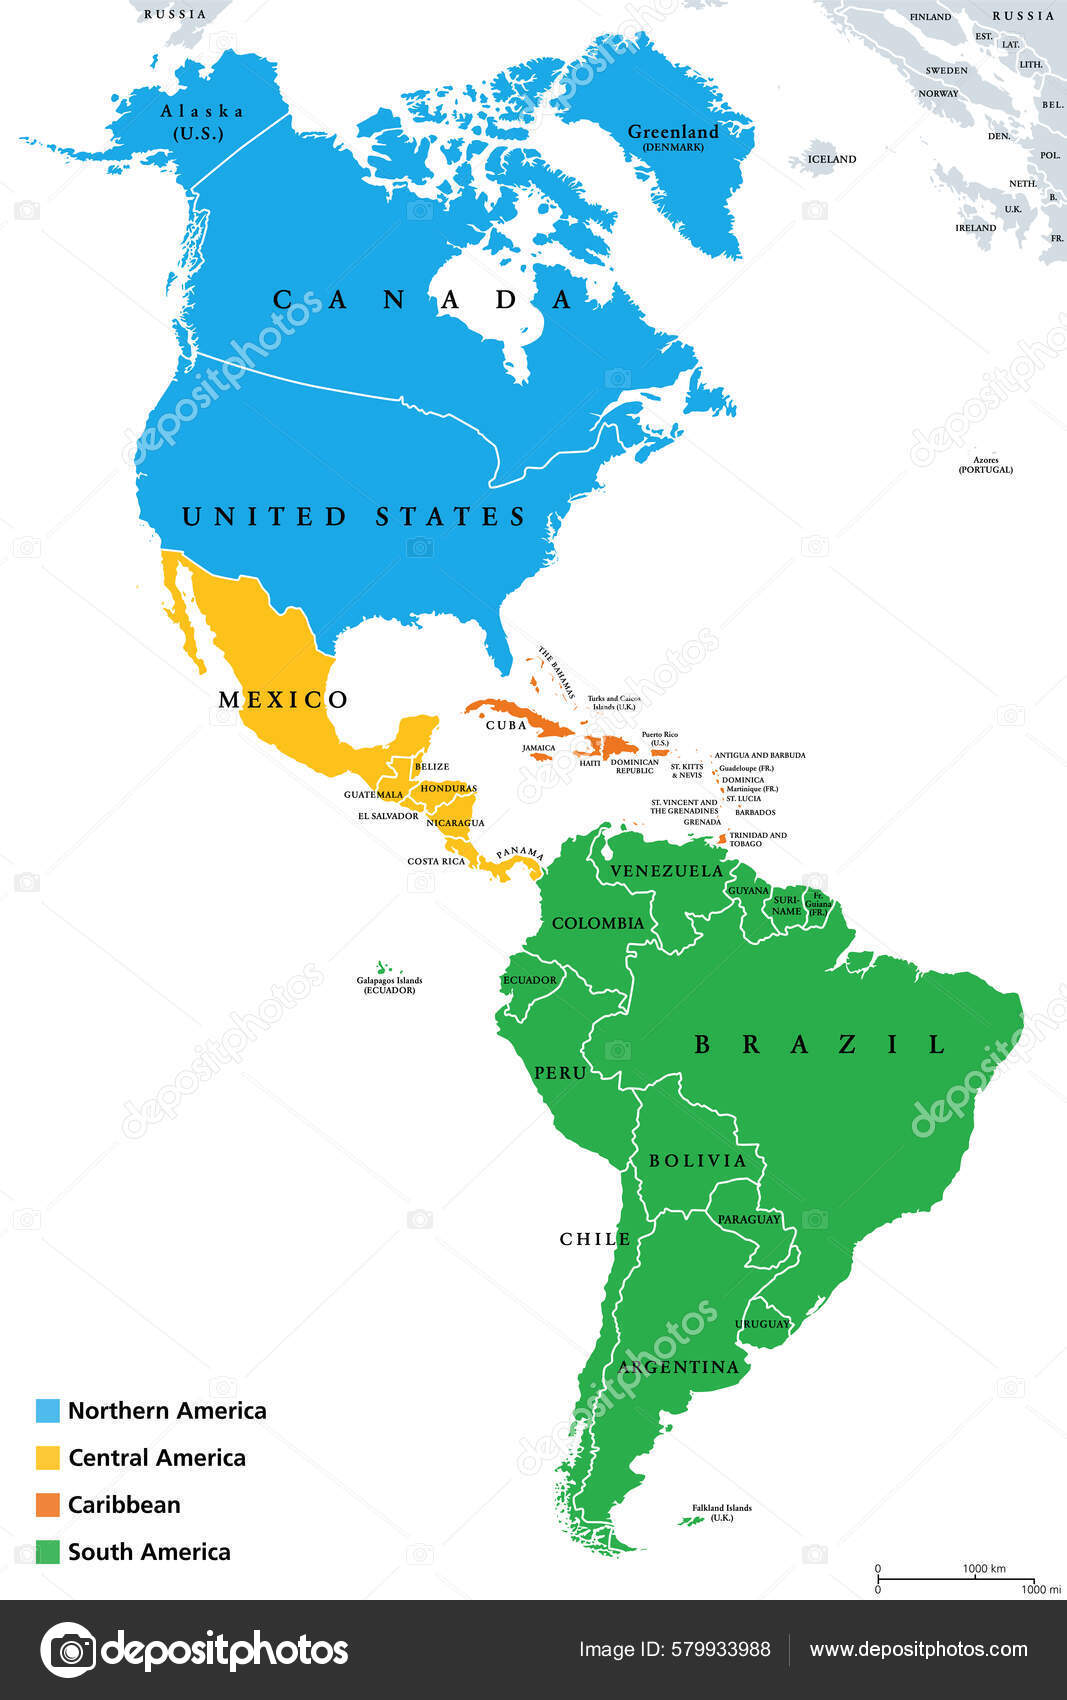 Idiomas da América do Sul: indo além do português e espanhol